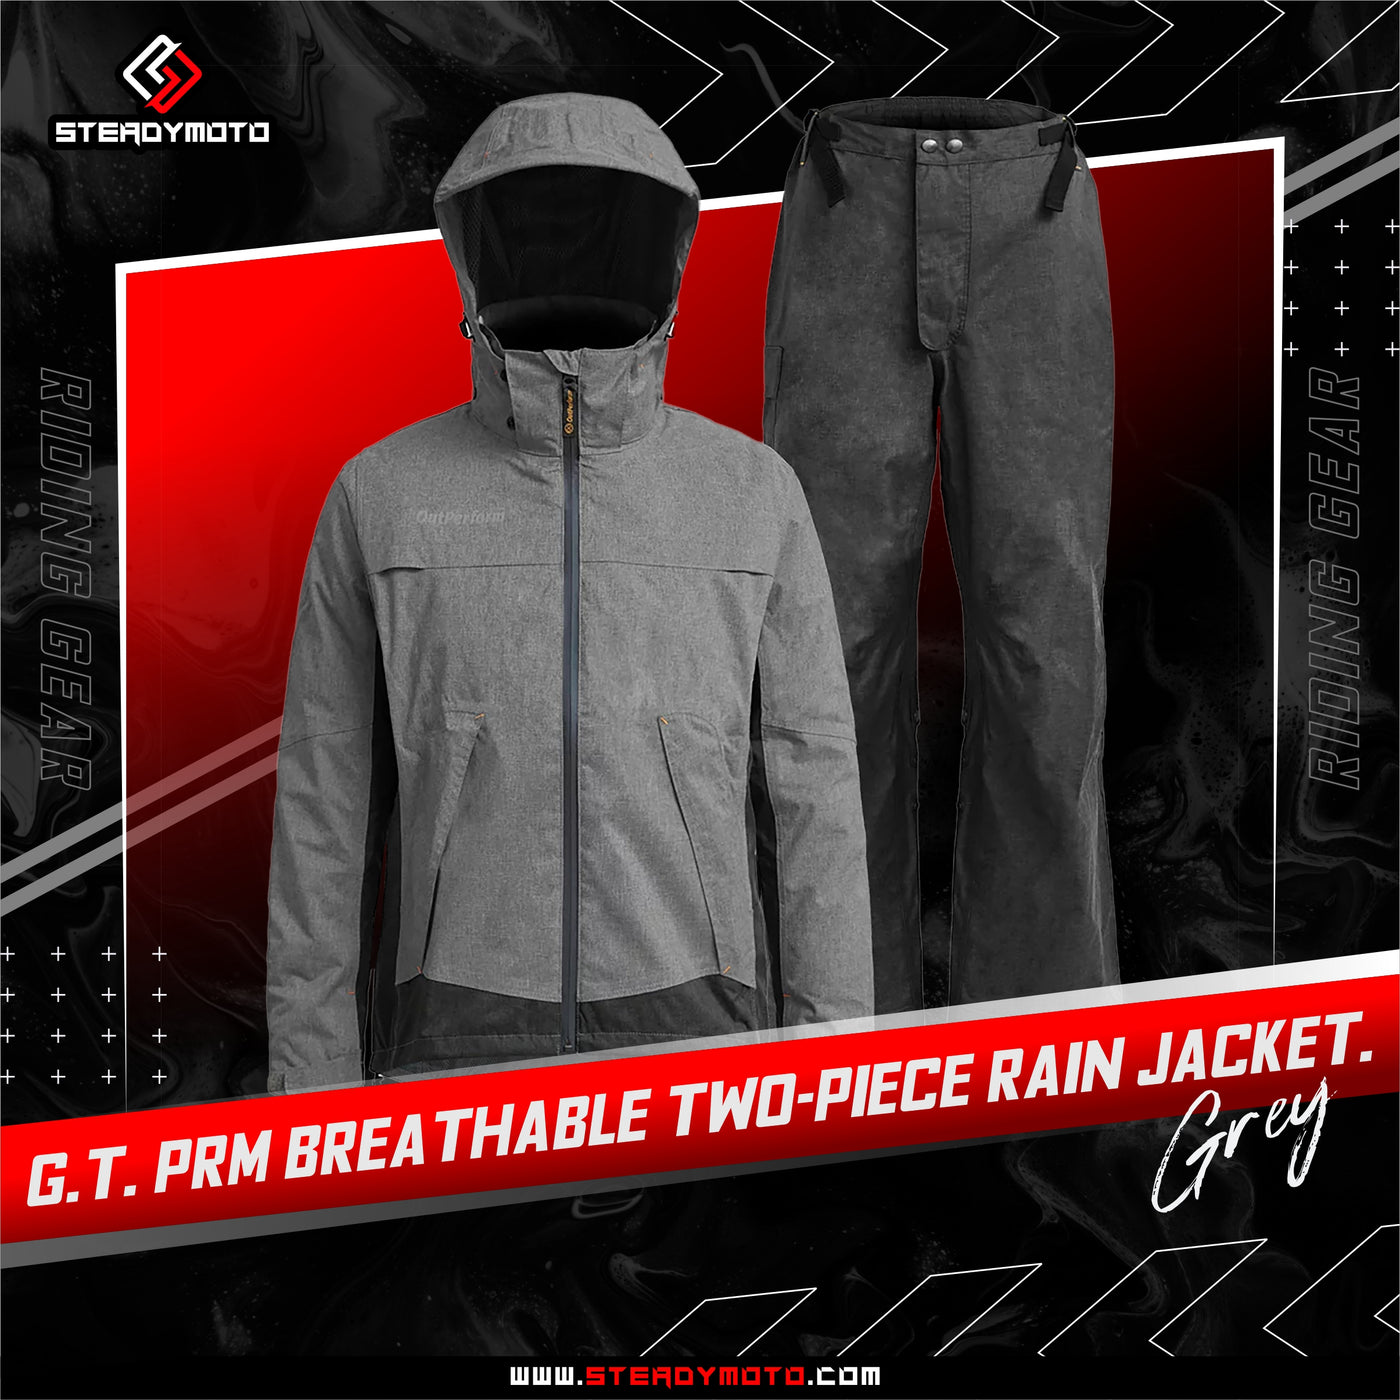 G.T. PRM Breatheable Two-Piece Rain Jacket